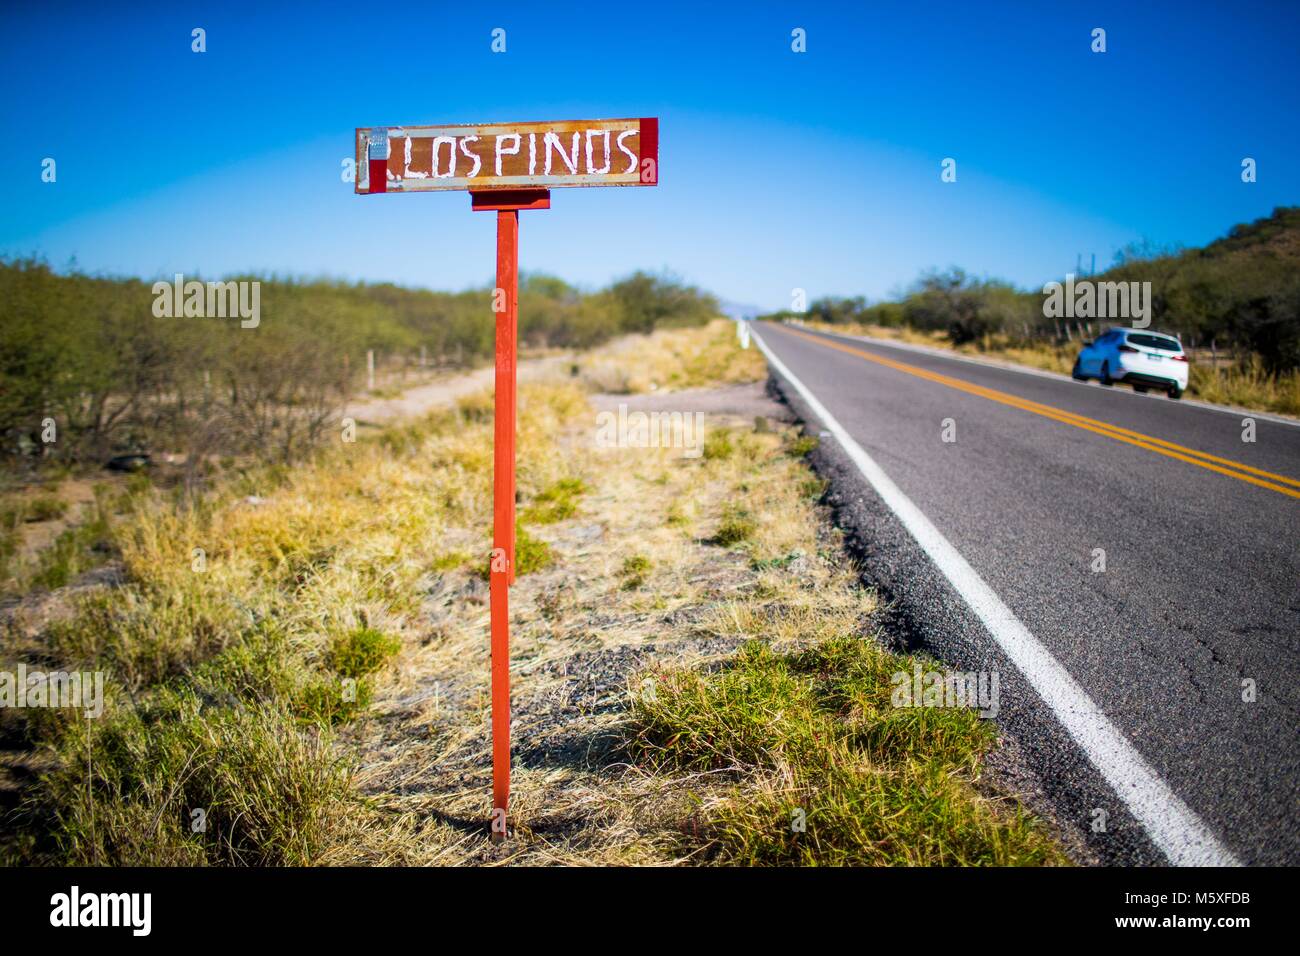 Letrero del Rancho los Pinos, sobre la carretera estatal rumbo a Cumpas y Moctezuma en Sonora Mexico. pclaves: monte, rural, nomenclatura, pasto, p Stock Photo